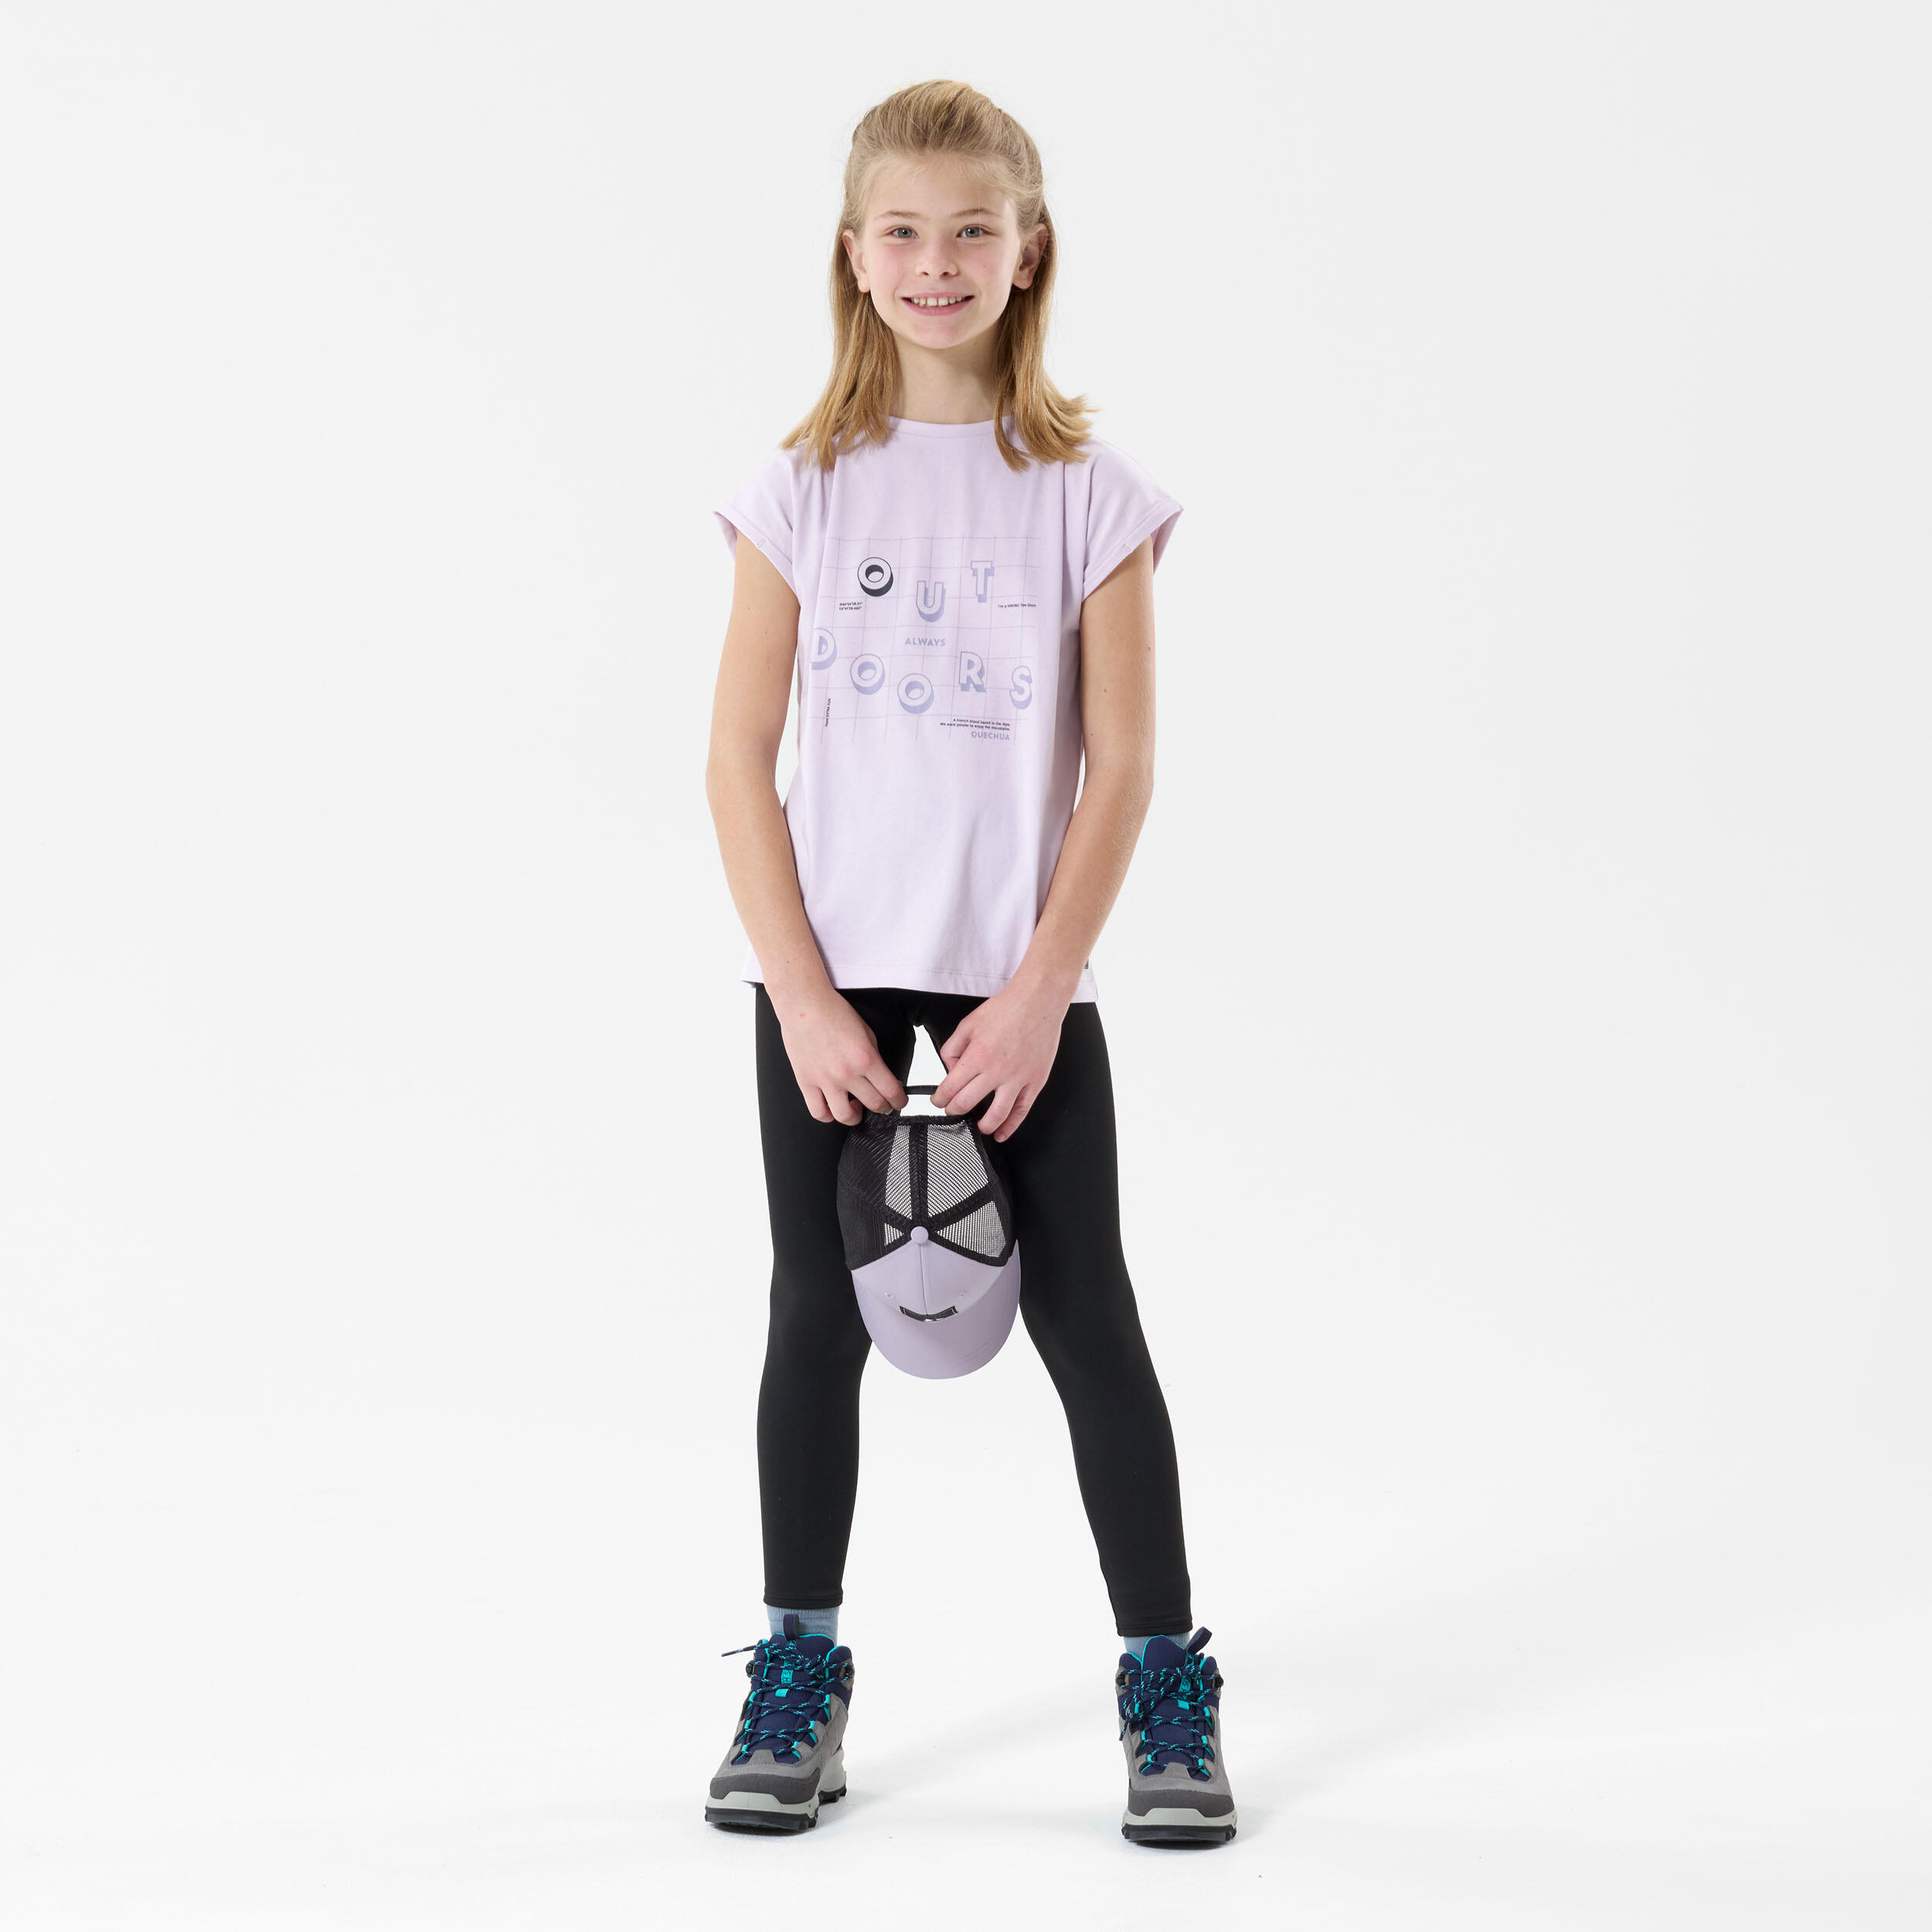 Child's hiking T-Shirt - MH100 purple - 7-15 years 2/6